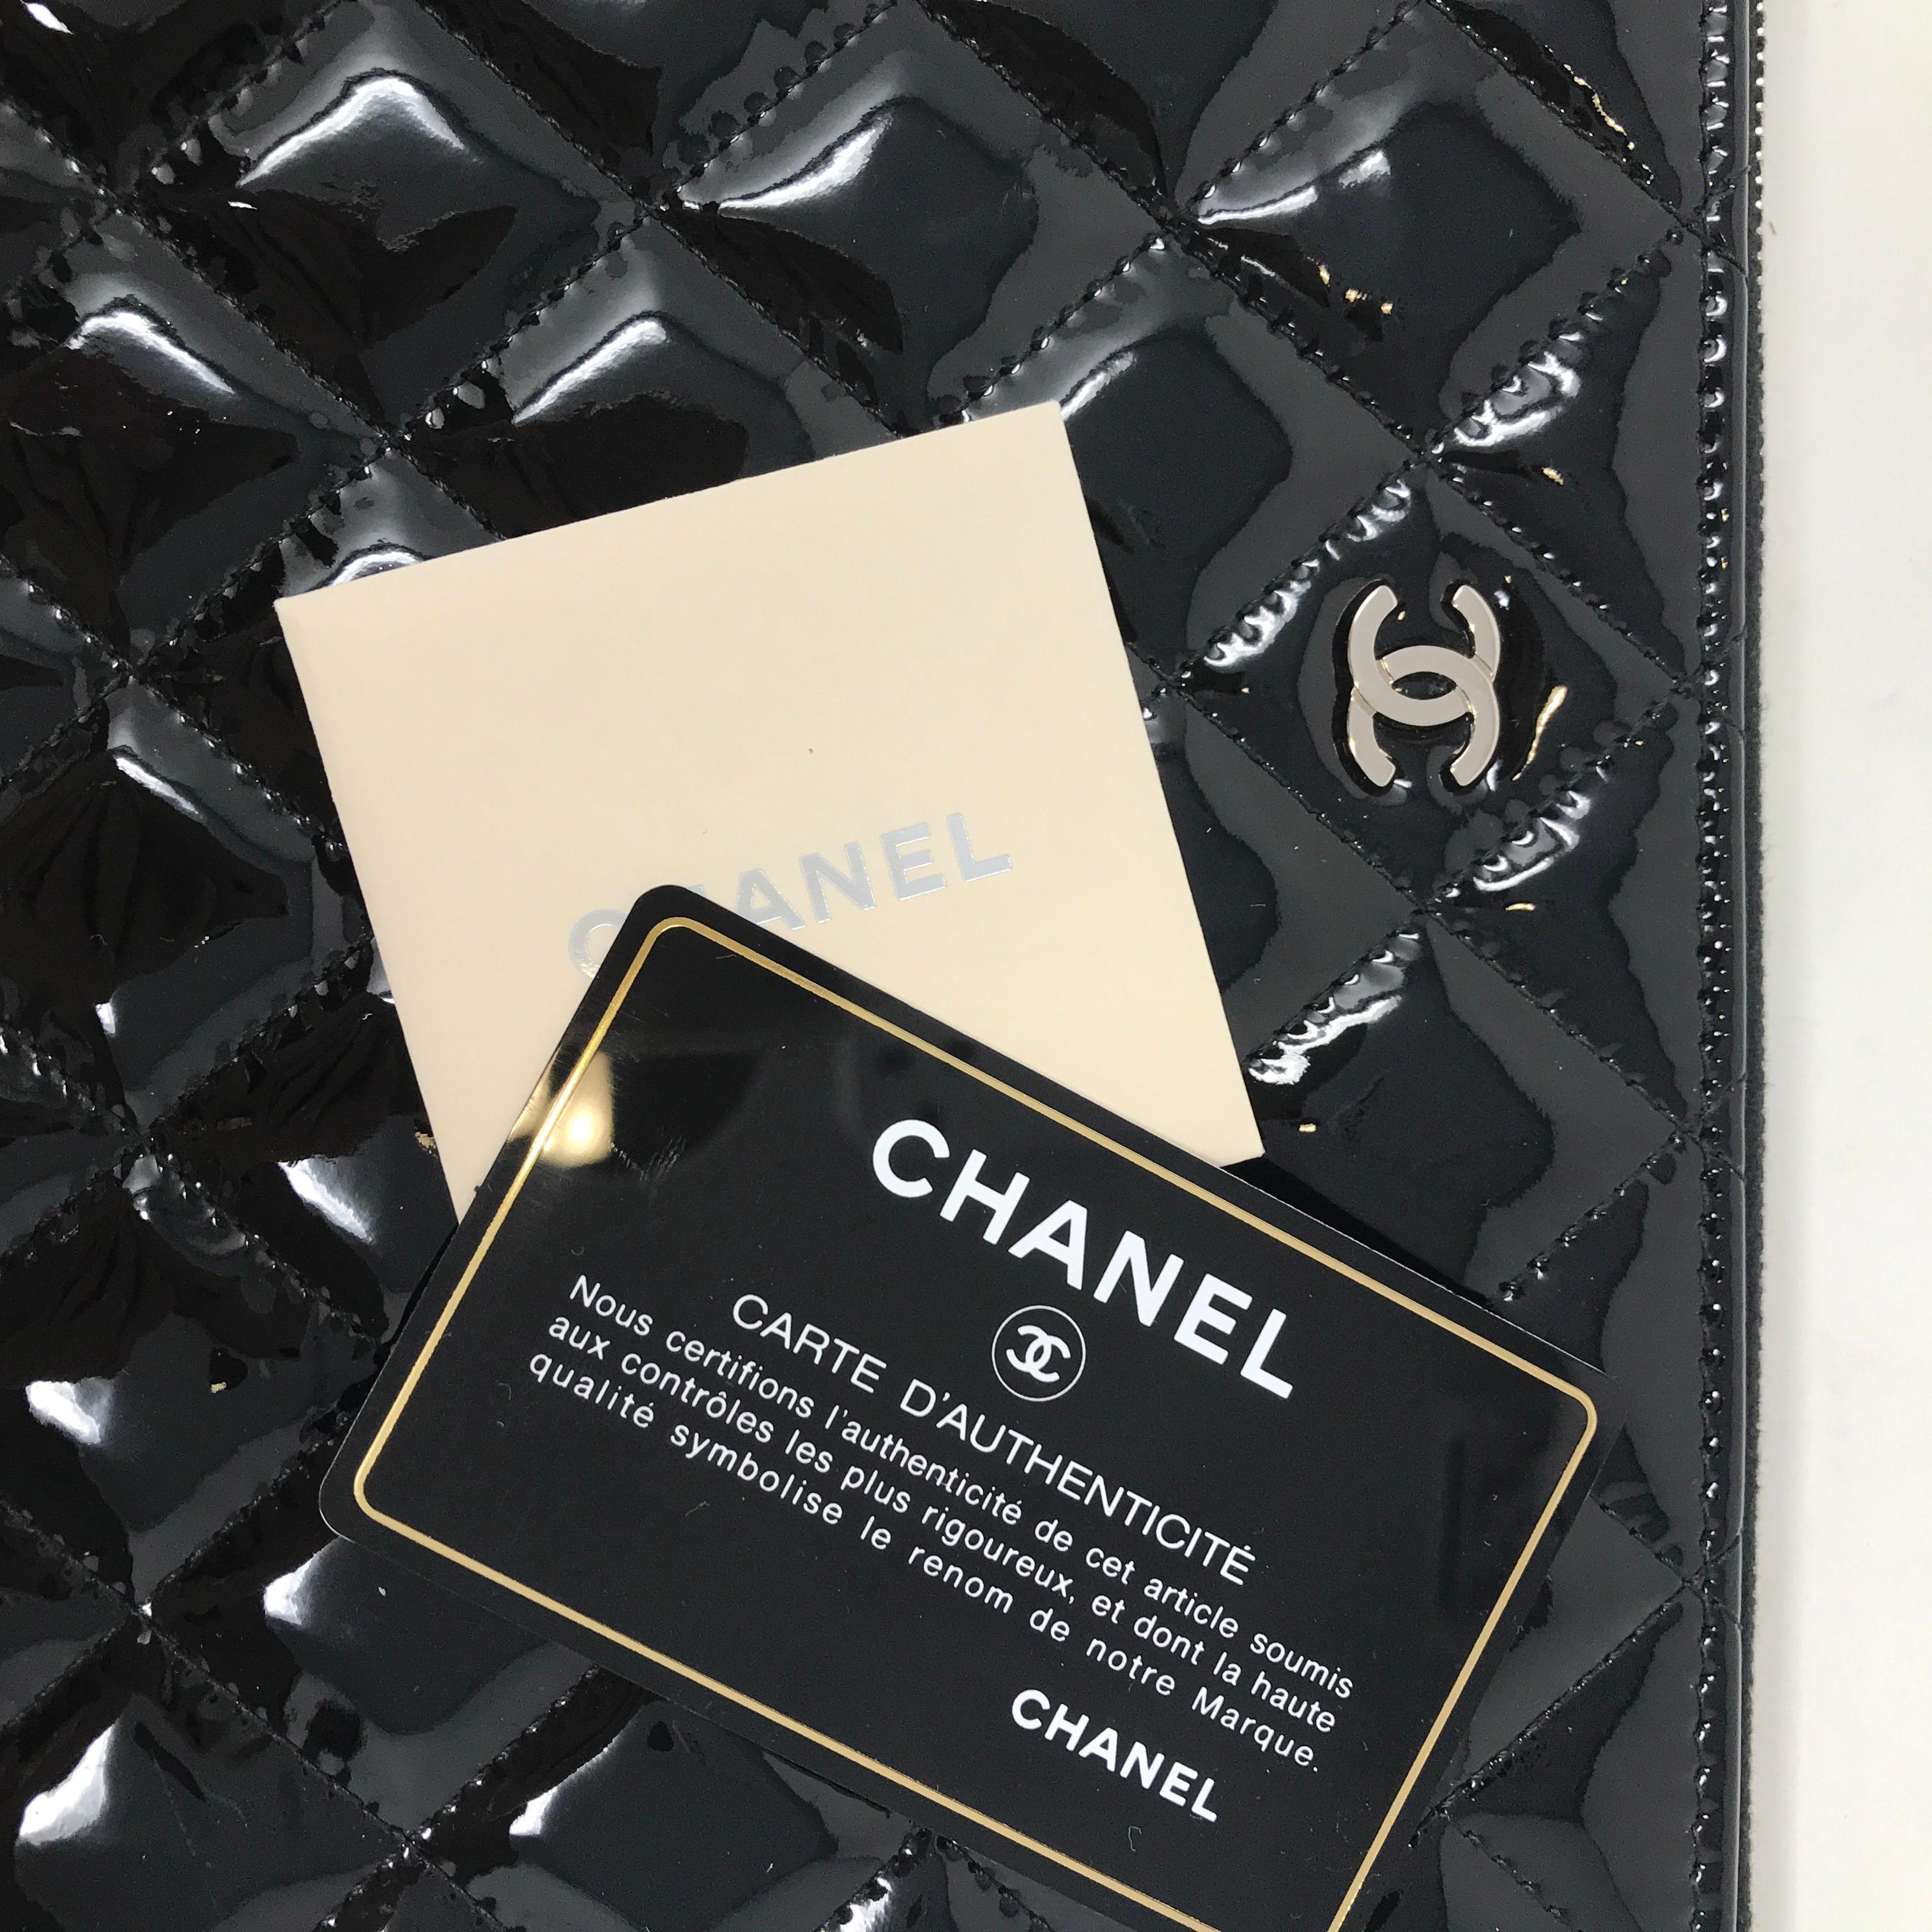 Black Clutch Chanel Paris matelassé patent leather, 2015 